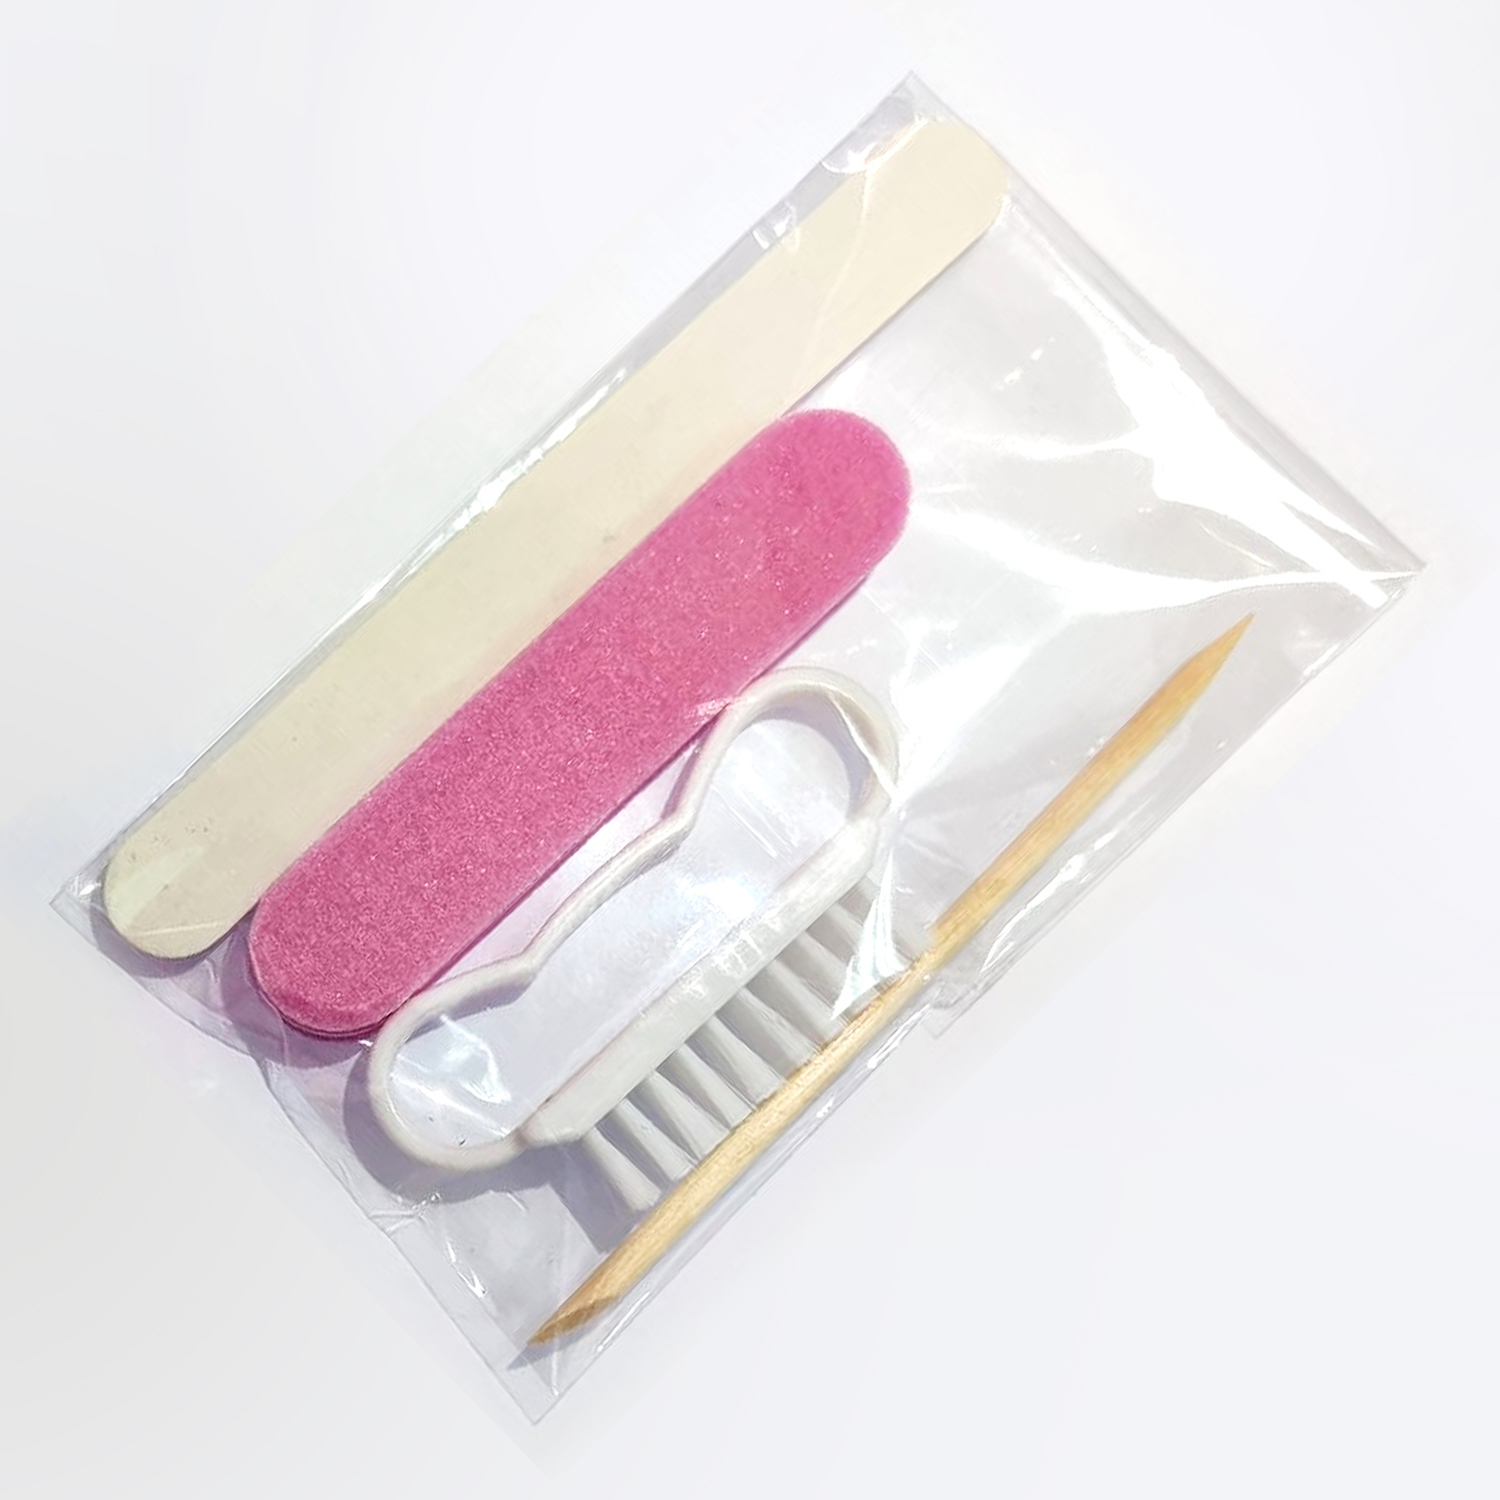 27-manicure-kit-4-nail-brush-o-stick-m-nail-file-white-mini-pink-buffer-4-pcs-kit-2-blademaster.jpg